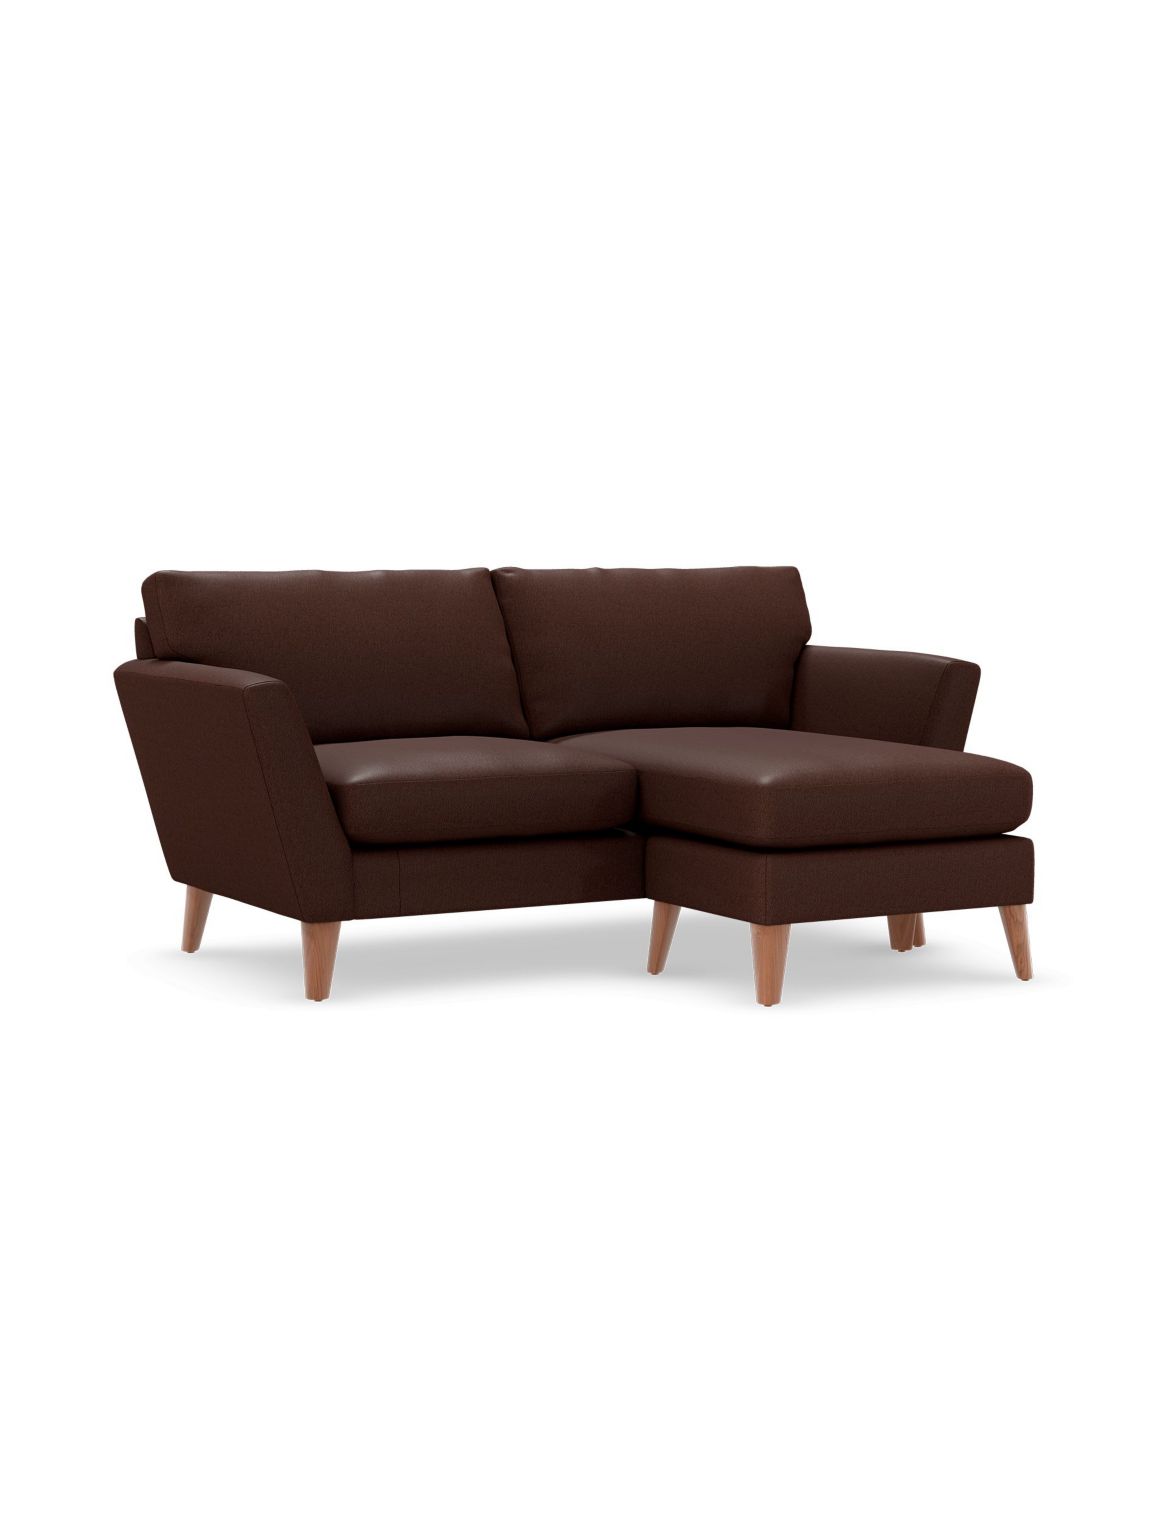 Foxbury Corner Chaise Sofa brown